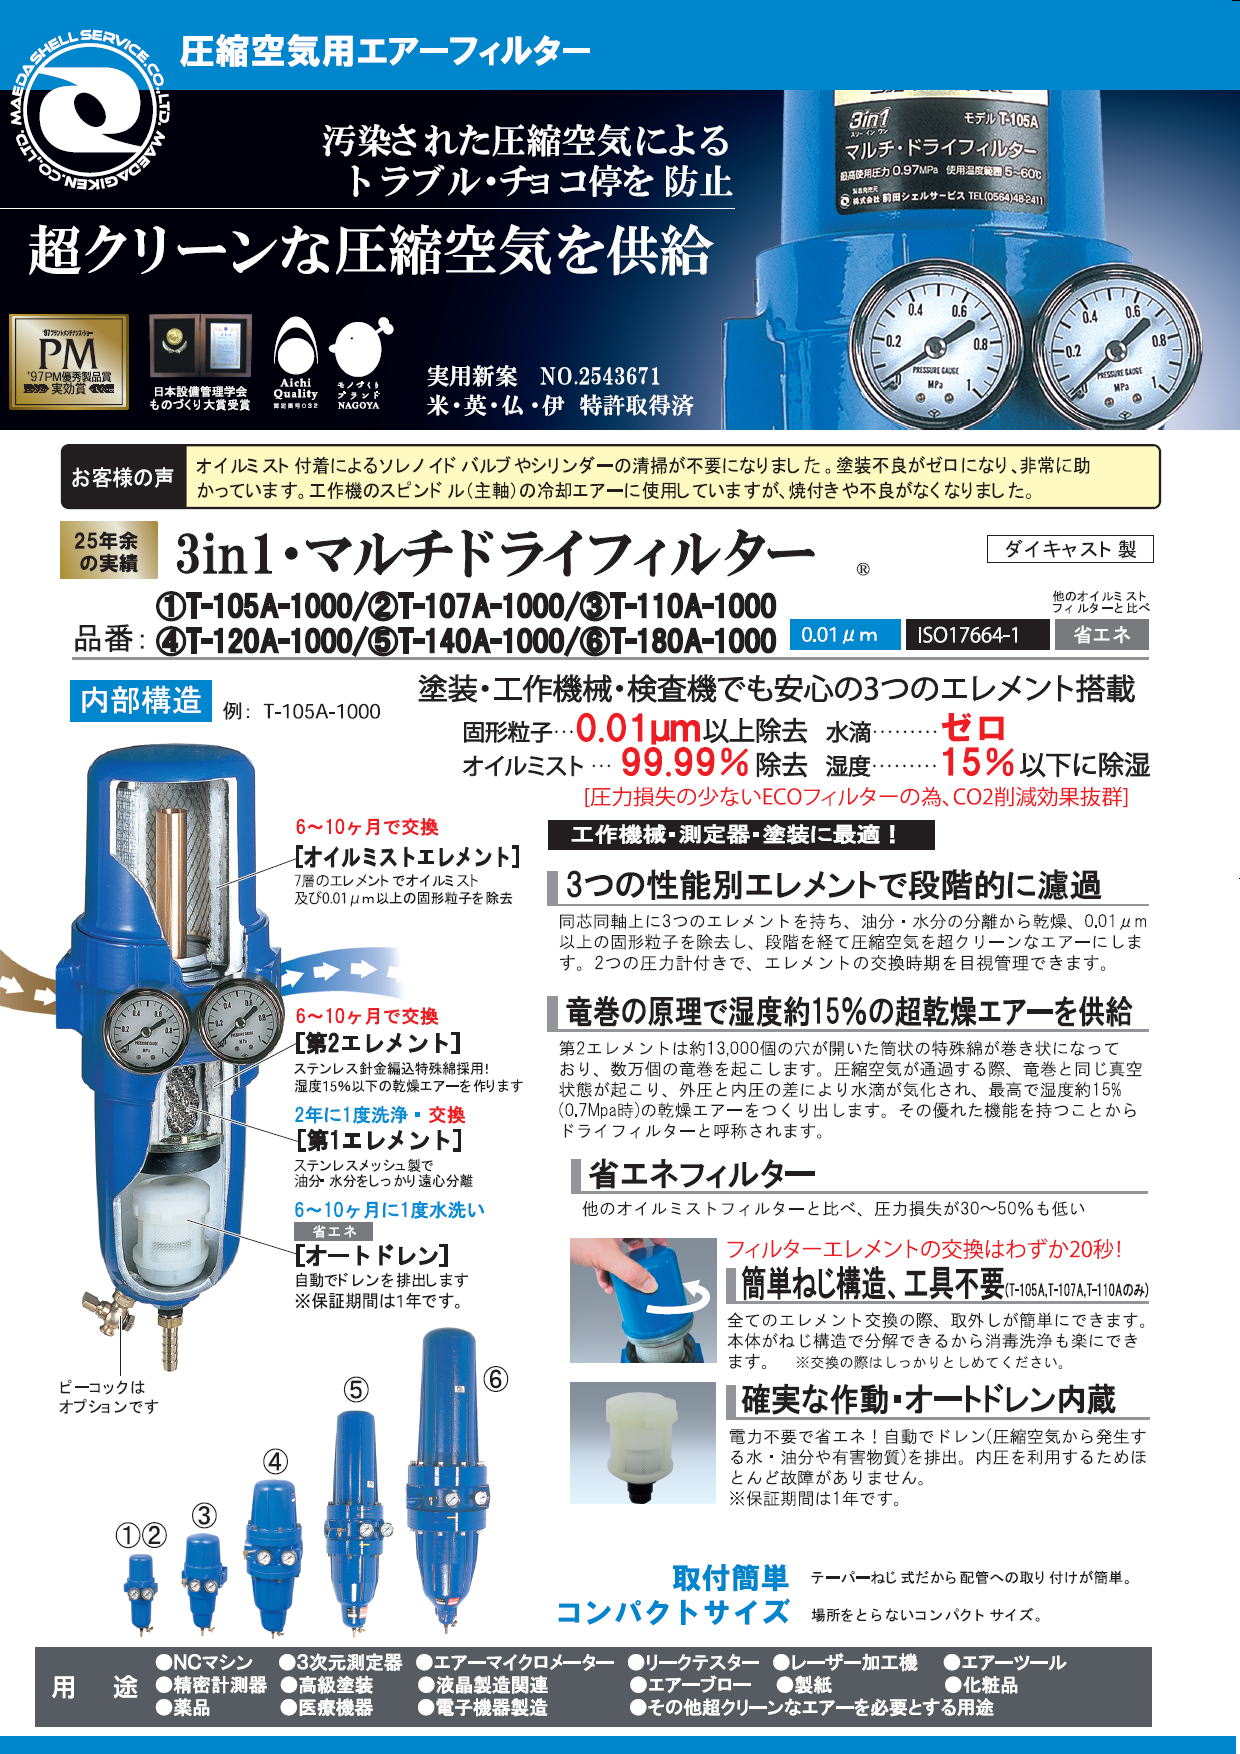 前田シェルサービス 3in1・マルチドライフィルター 圧縮空気用エアー